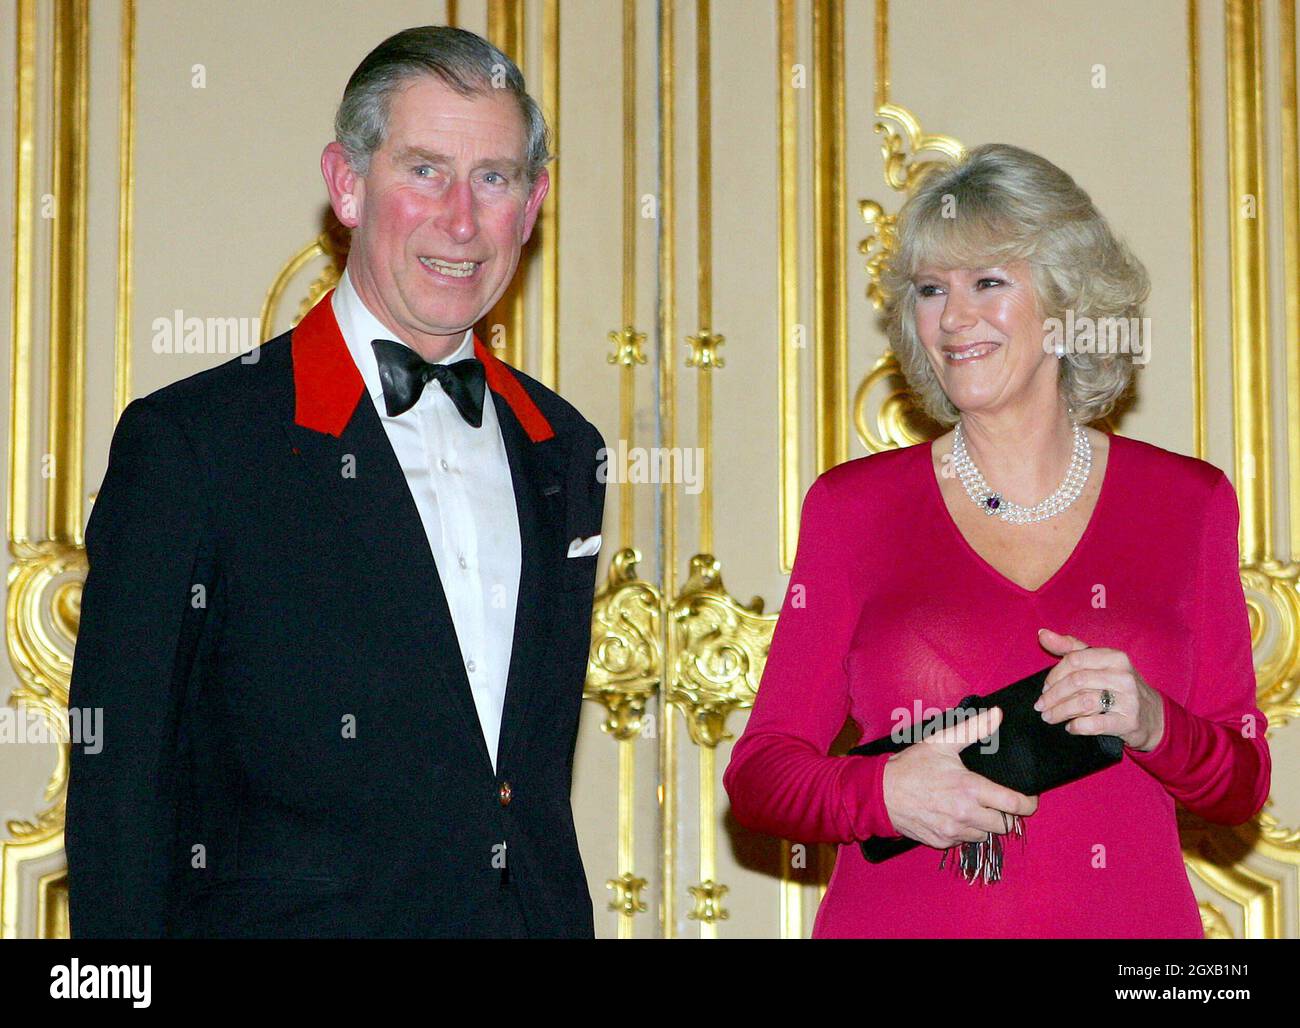 Prinz Charles und Camilla Parker Bowles kommen zu einer Party im Schloss Windsor, nachdem sie ihre Verlobung Anfang des 10. Februar 2005 angekündigt hatten. Der britische Prinz Charles und seine langjährige Gefährtin Camilla Parker Bowles sollen heiraten, kündigte sein Büro am Donnerstag an und besiegelt damit eine Beziehung, die vor 35 Jahren zum ersten Mal aufblühte. Stockfoto